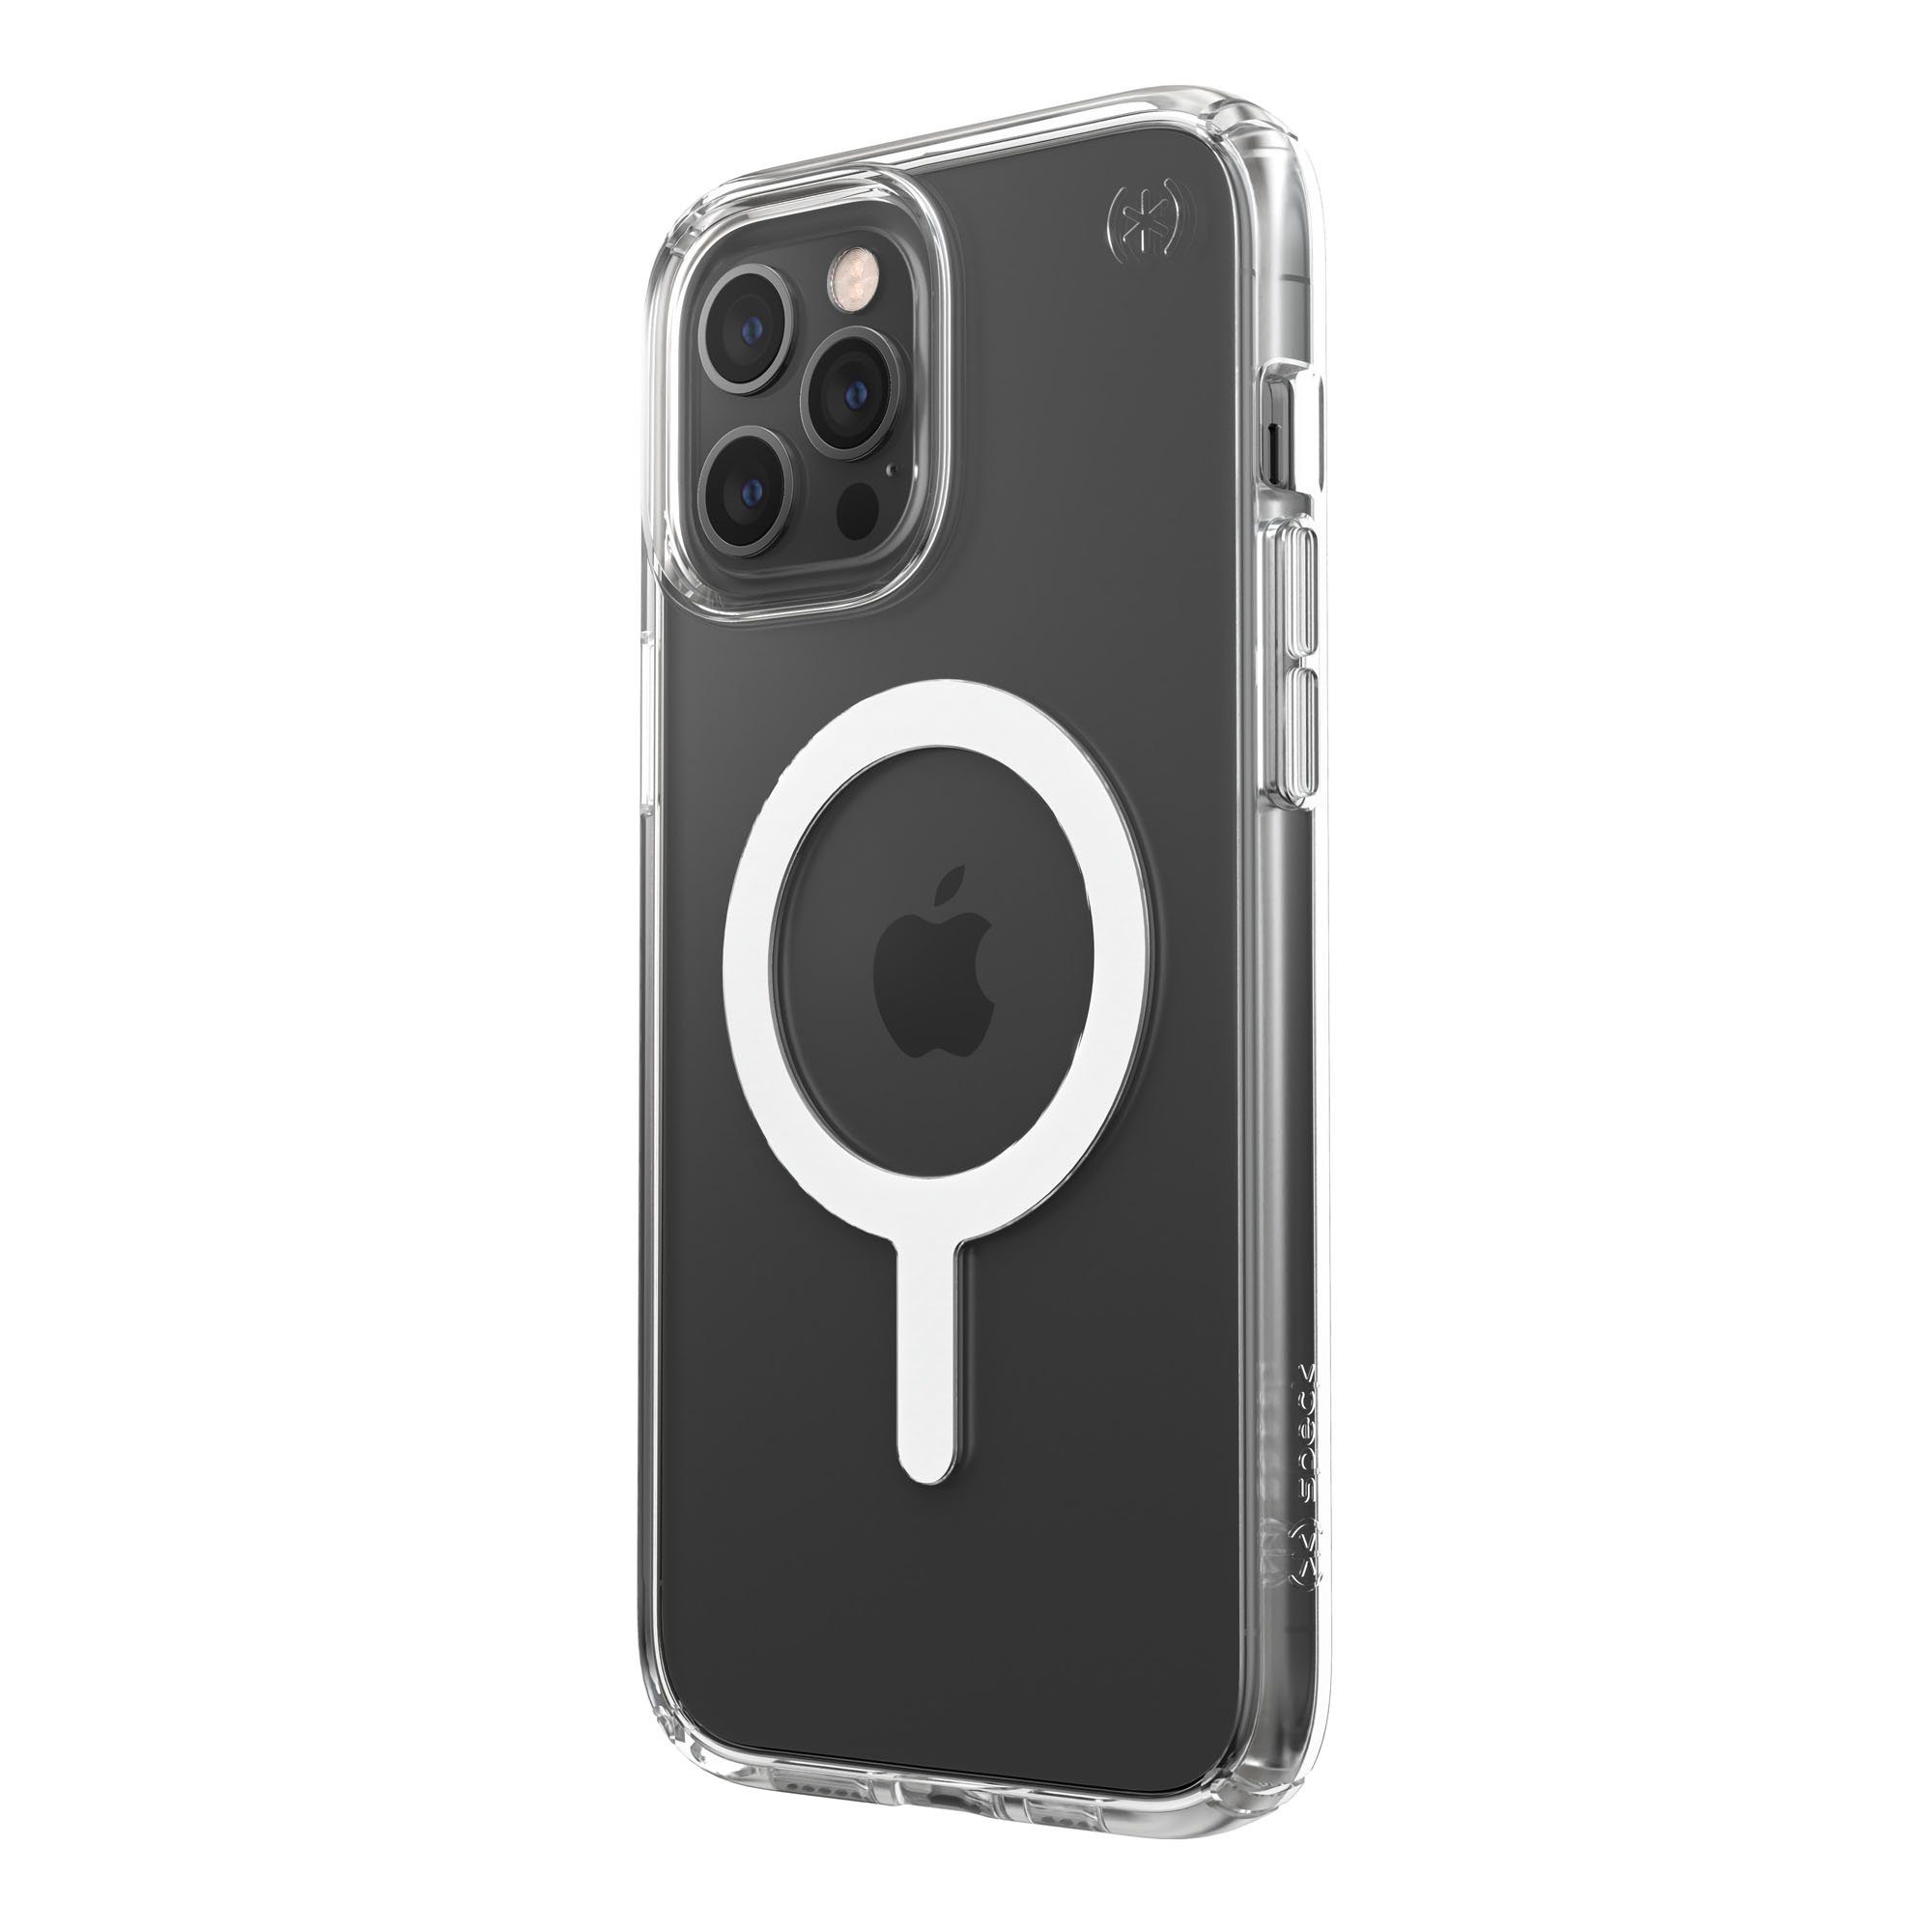 Speck Handyhülle »Presidio Perfect-Clear MagSafe Case« Apple iPhone 12 Pro  Max, Antimikrobielle Microban-Technologie, Fallschutz bis zu 4 m,  Vergilbungsbeständig, Transparentes Design, MagSafe kompatibel online  kaufen | OTTO